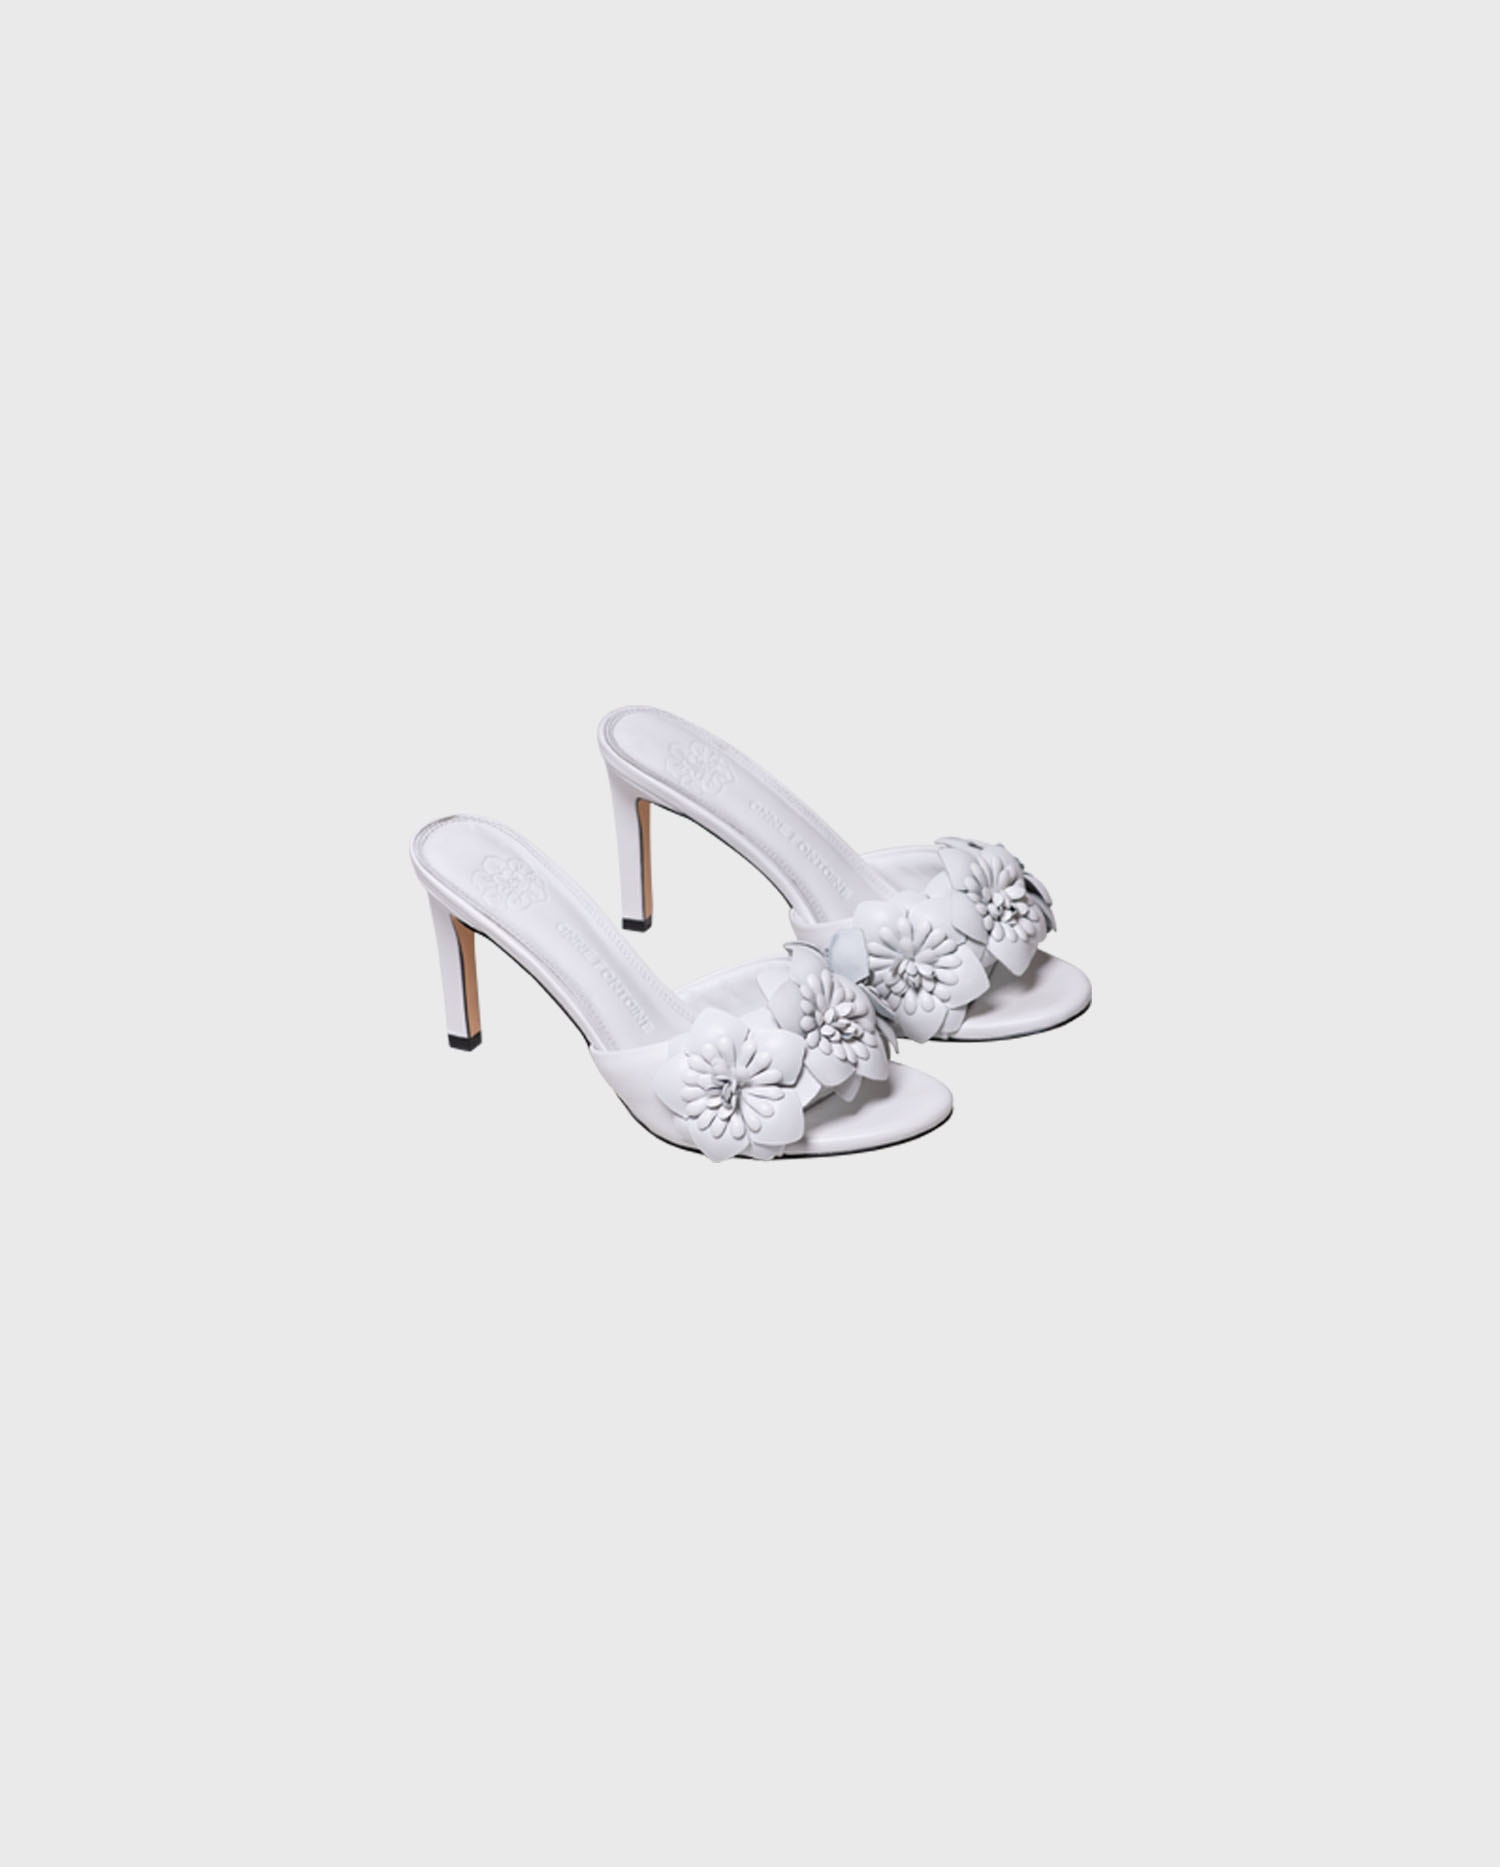 Découvrez la sandale à talons CAMOMILLE en cuir blanc avec fleurs 3D de ANNE FONTAINE